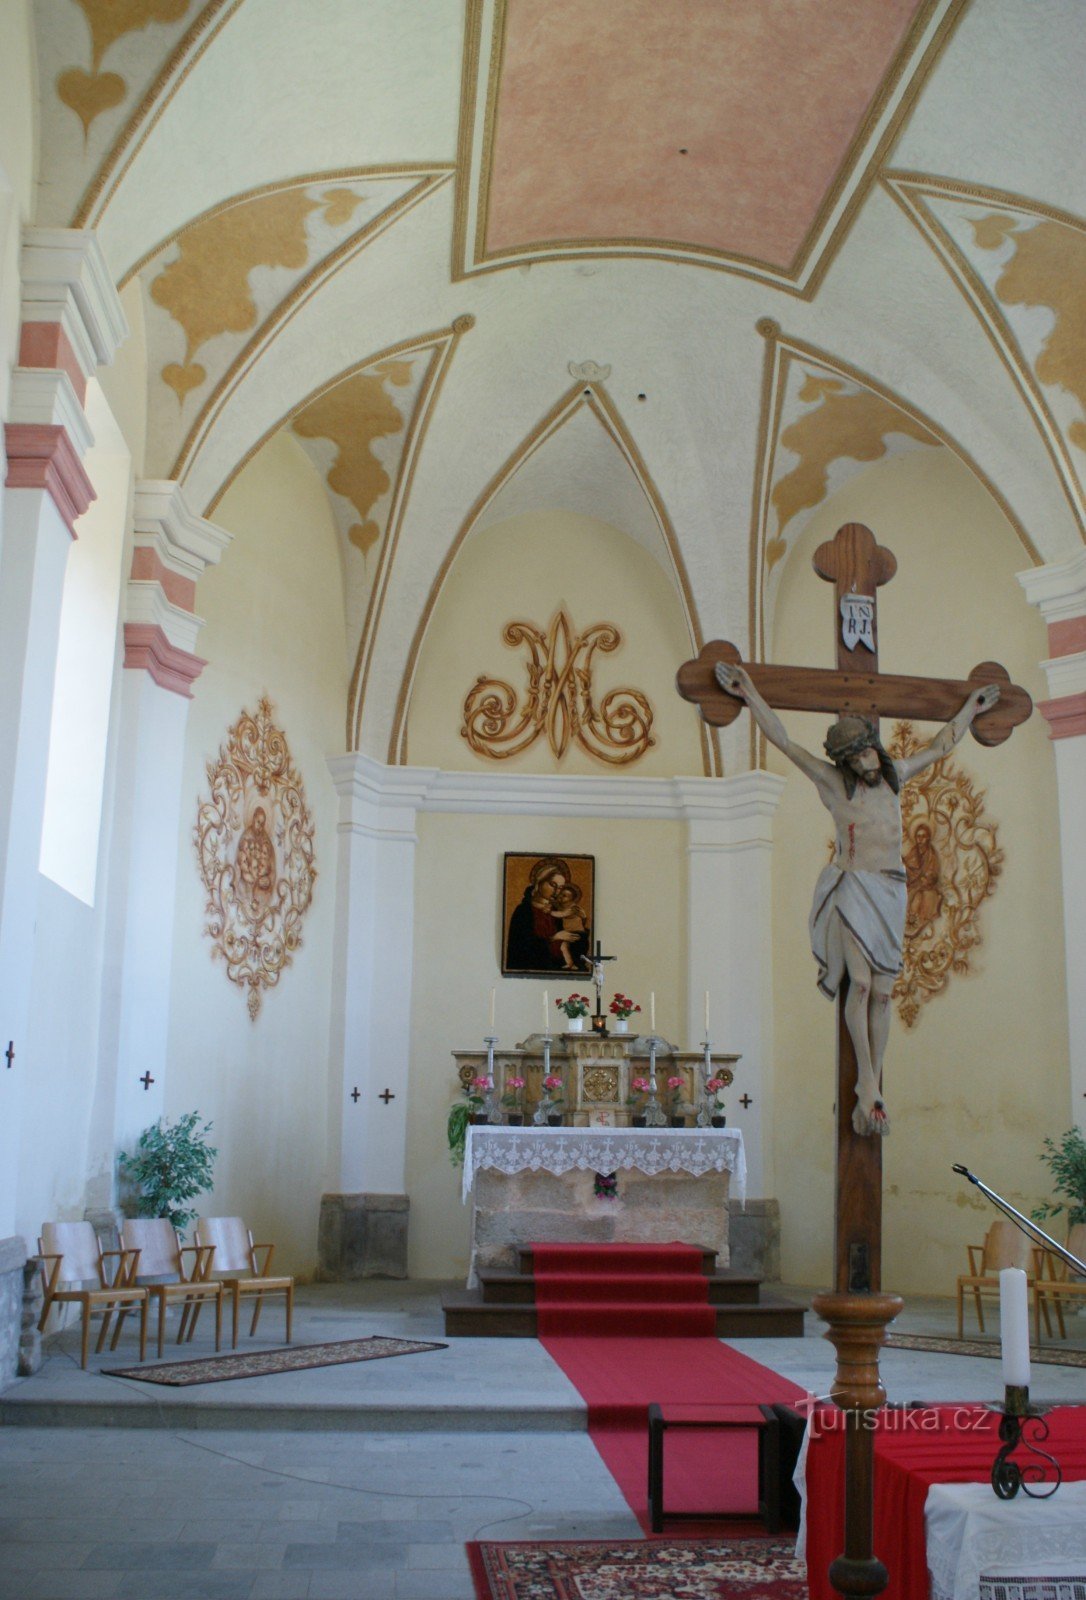 Svatý Kámen (perto de Rychnov nad Malší) – Igreja de Nossa Senhora das Neves